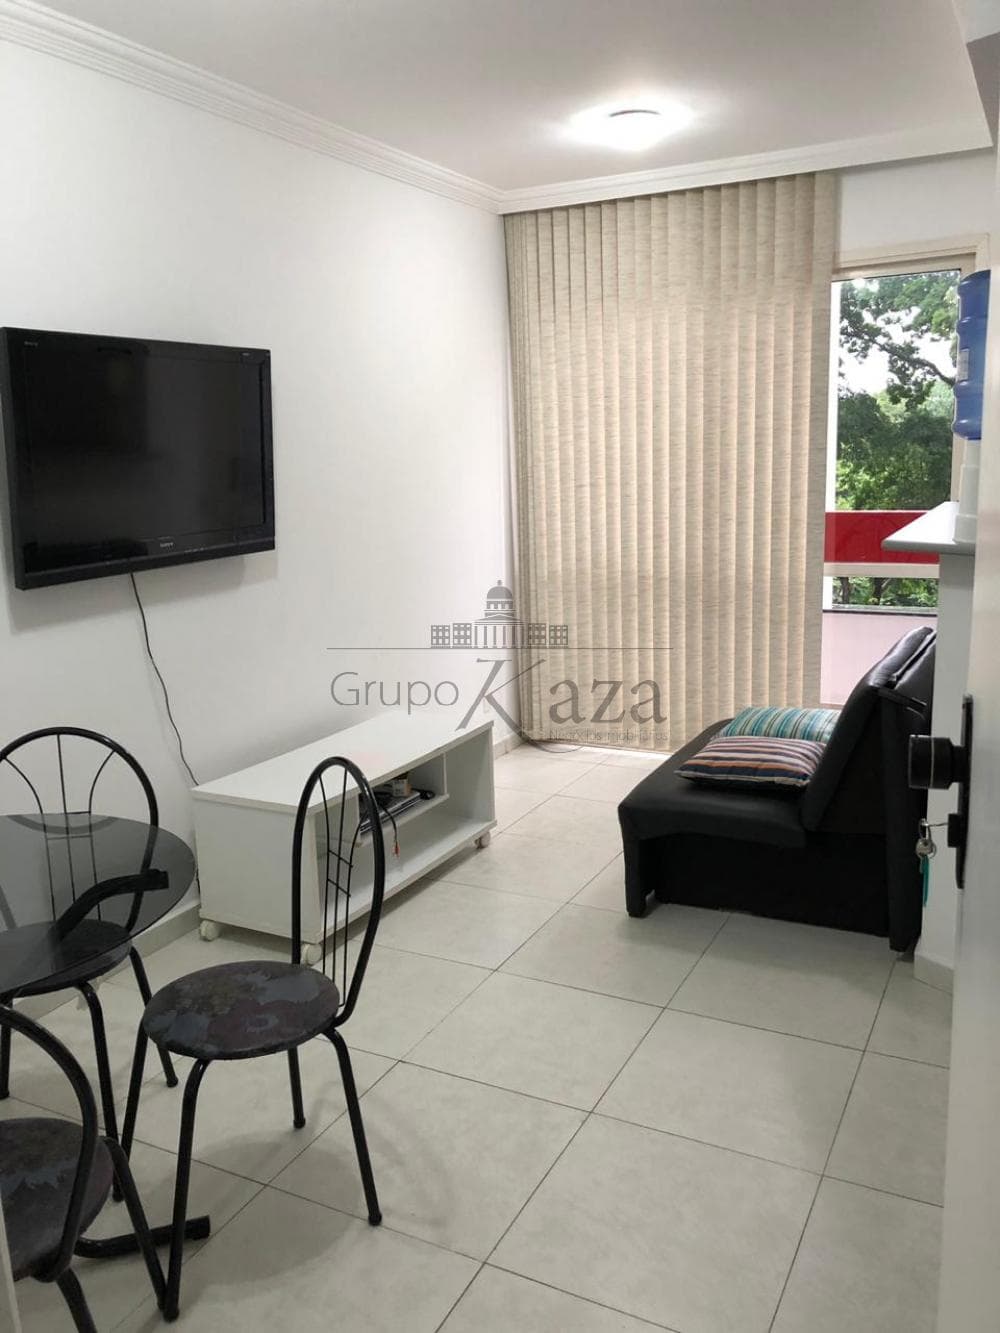 Foto 1 de Apartamento Duplex em Jardim São Dimas, São José dos Campos - imagem 1